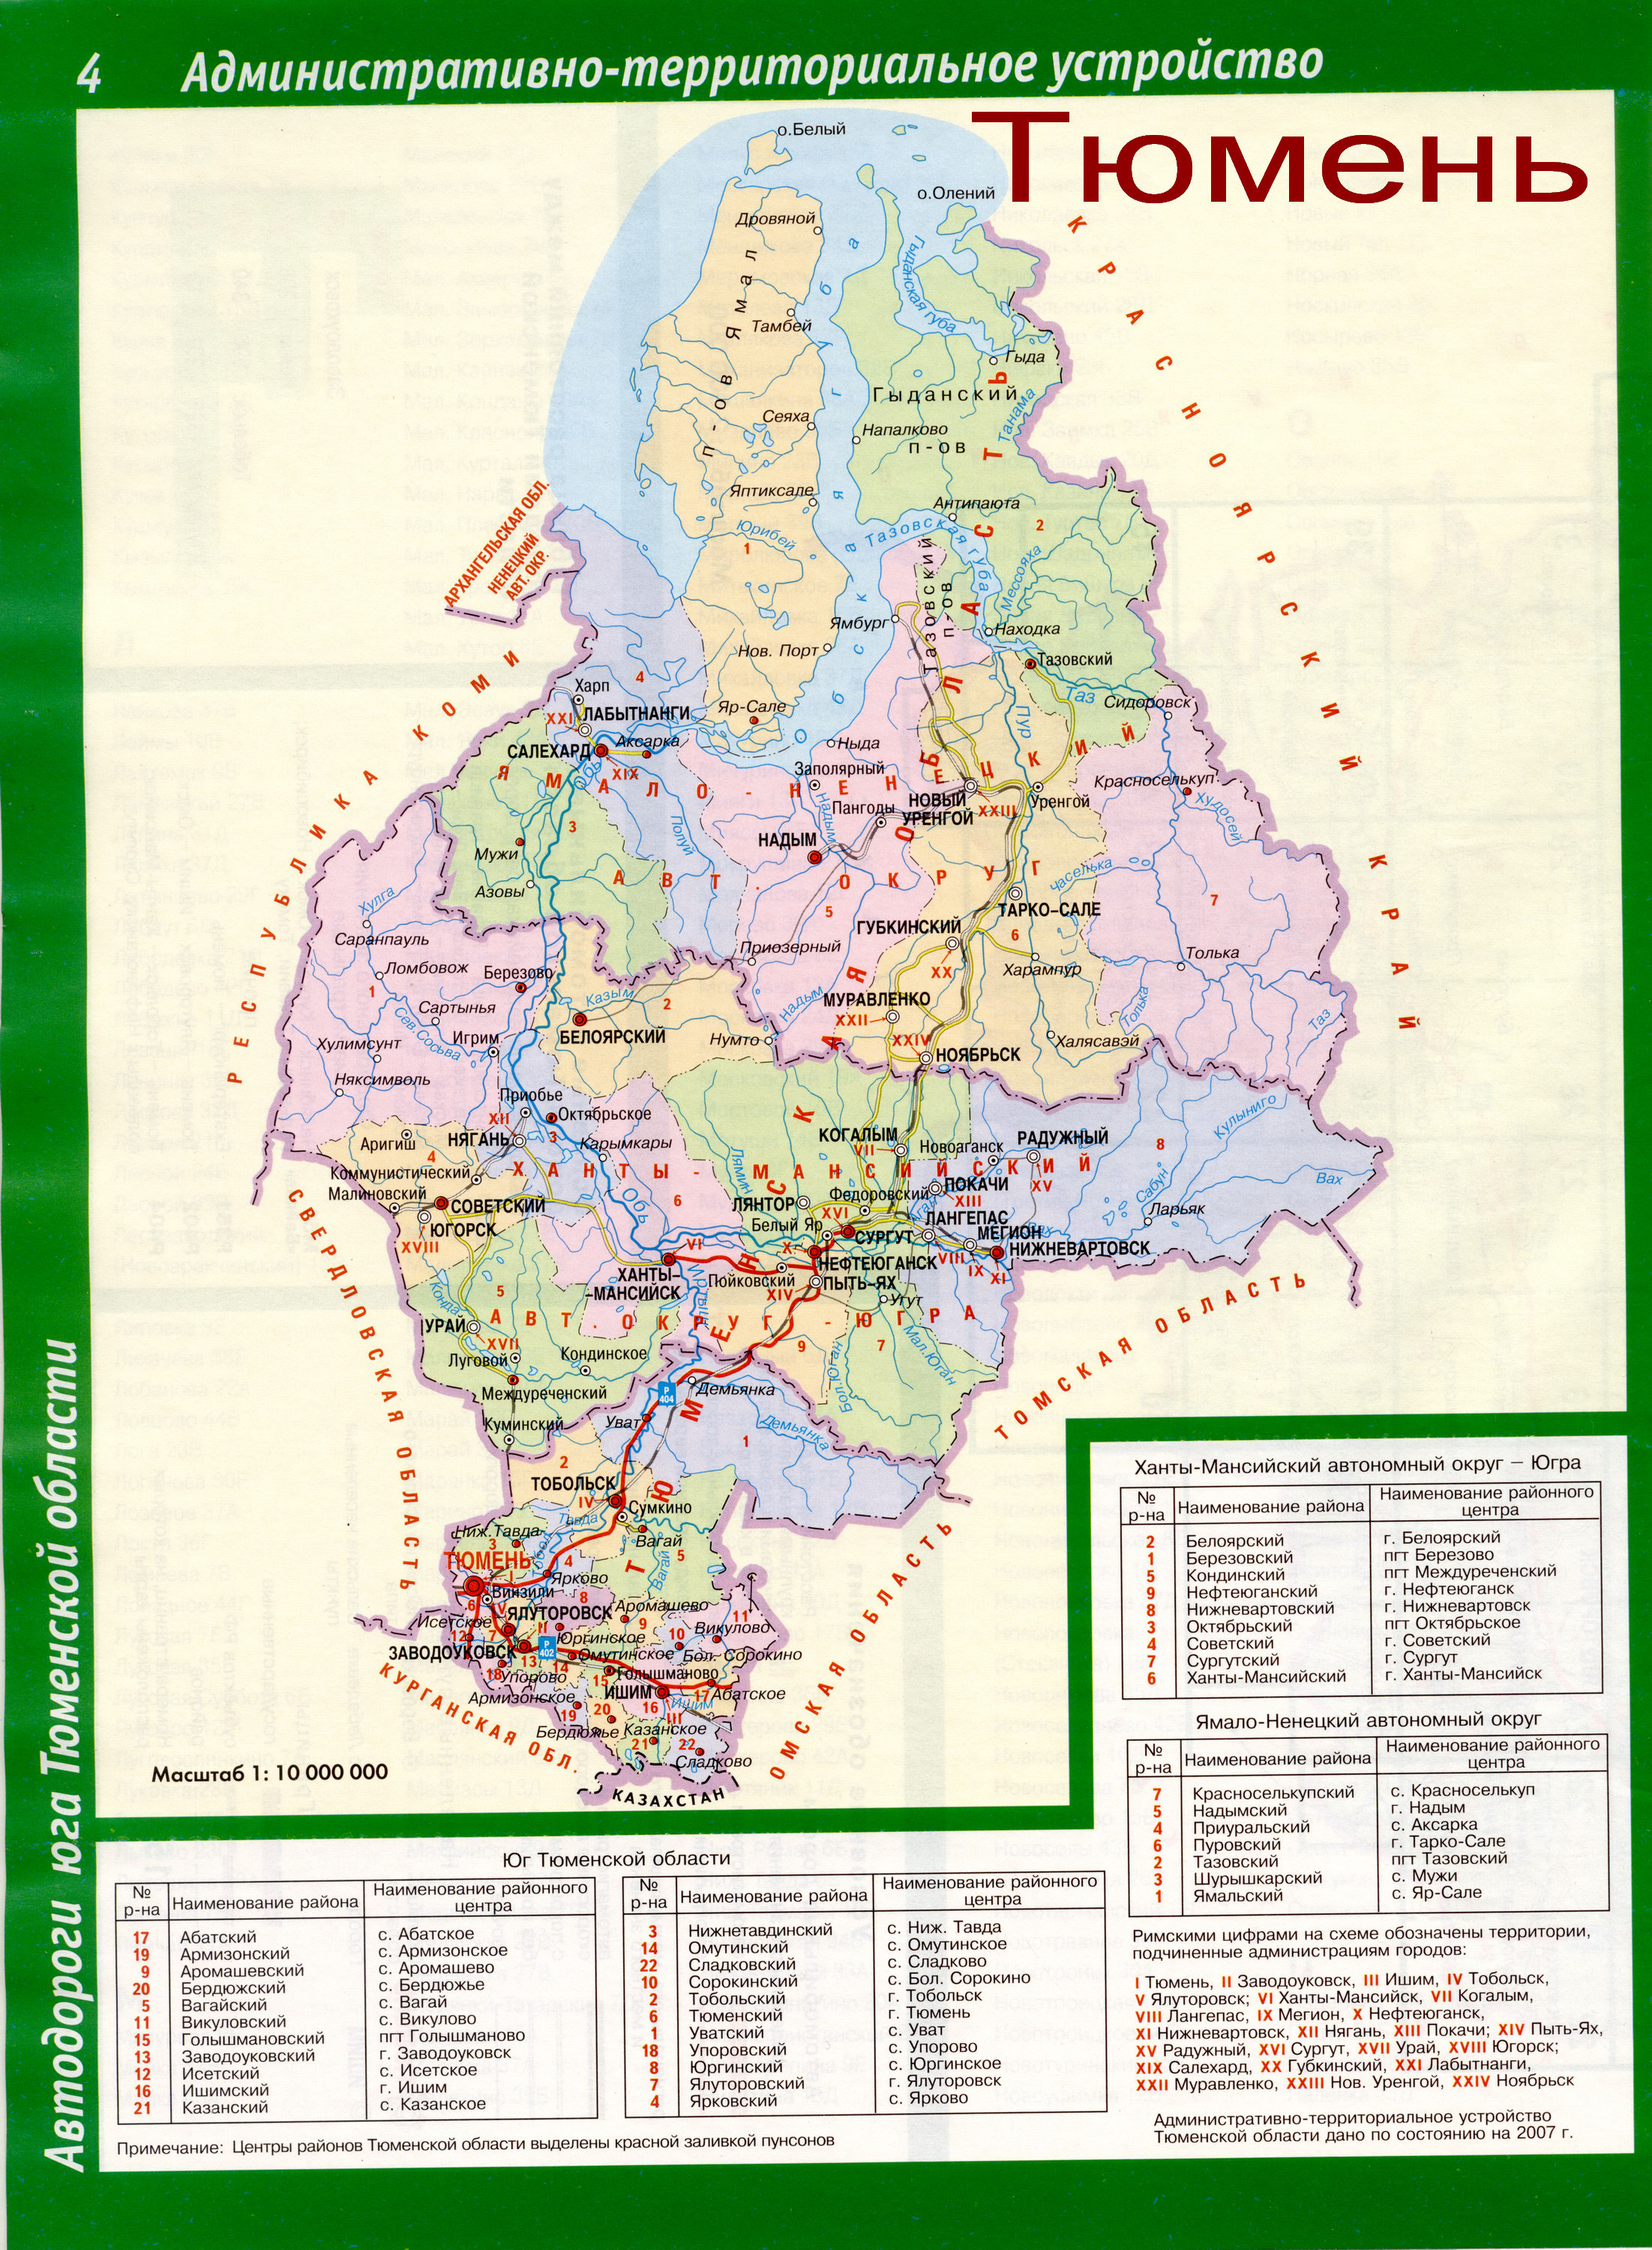 Сибирь - подробные карты областей Сибирского федерального округа, C0 - Тюменская область по районам, областной центр г Тюмень